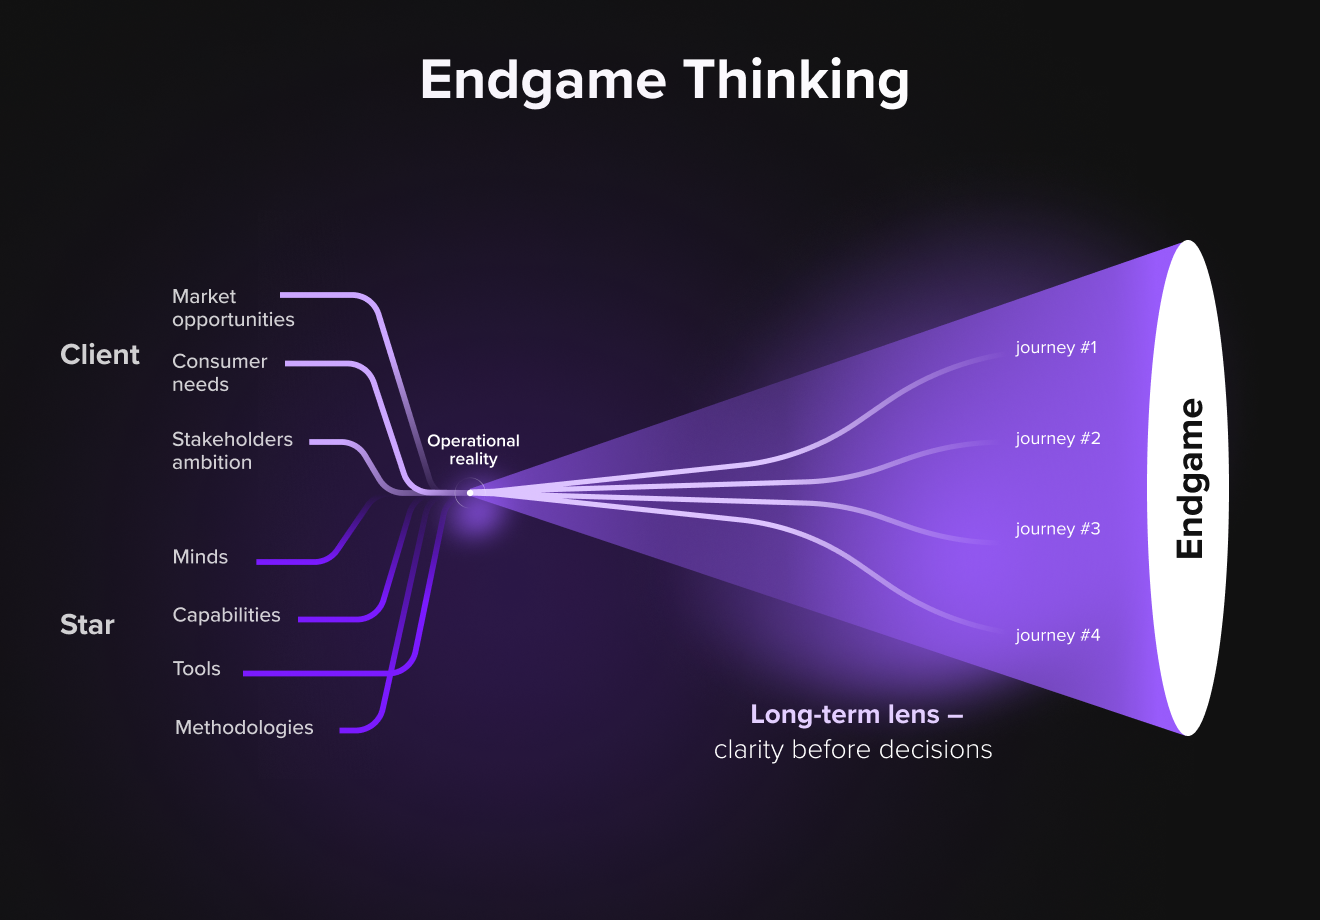 Endgame Thinking methodology